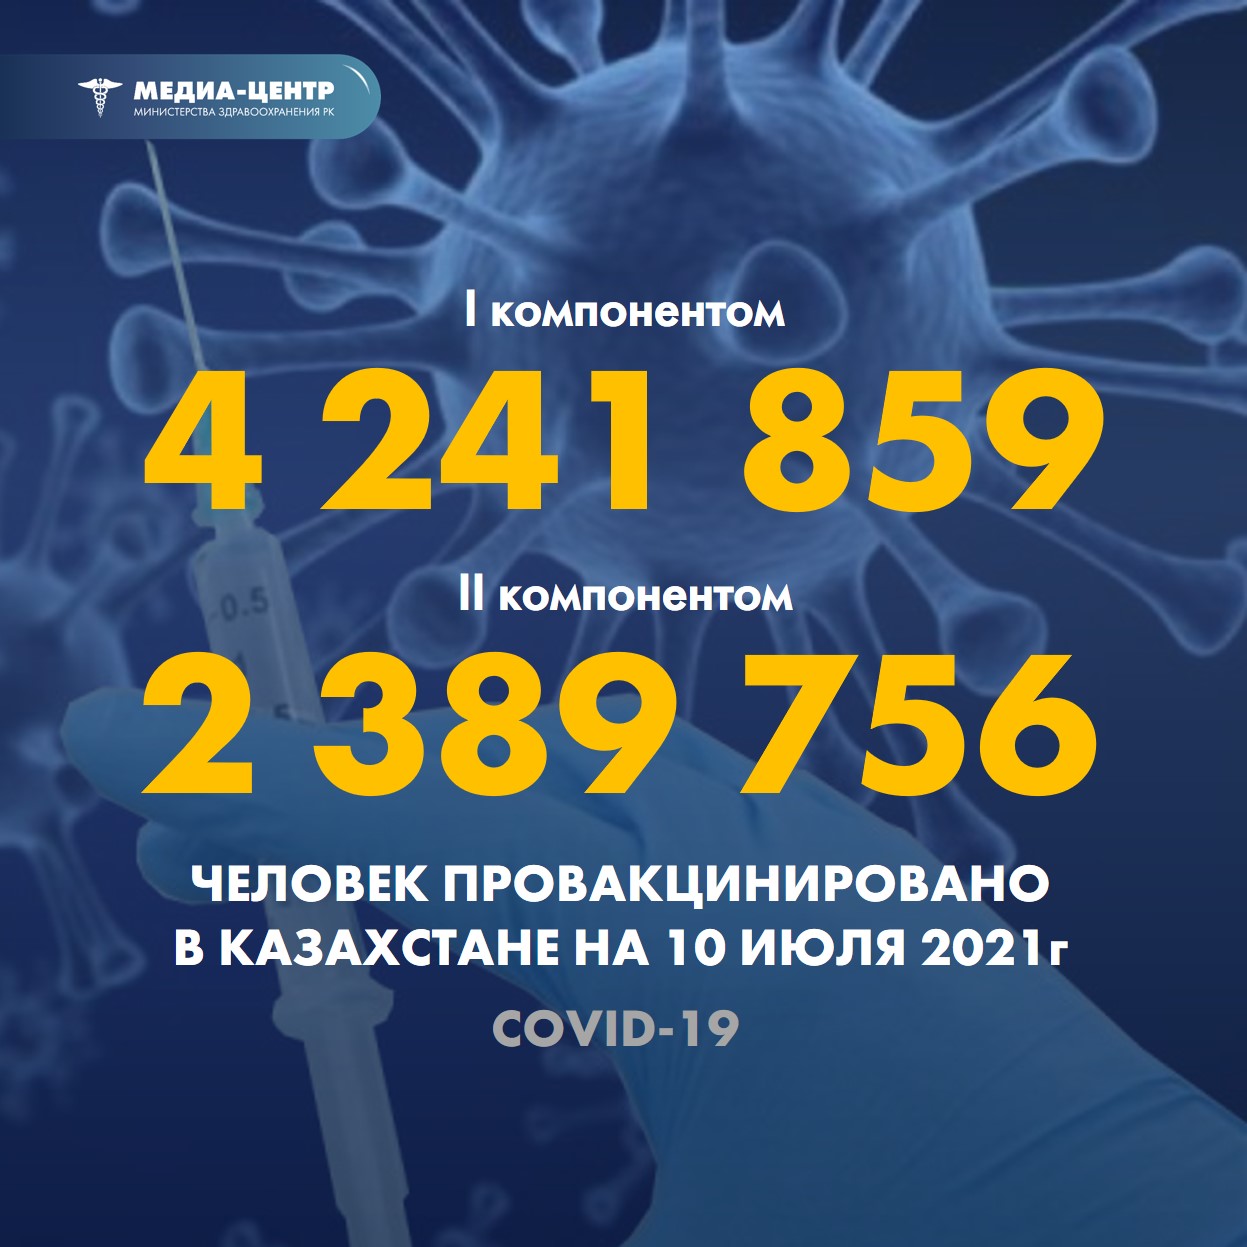 Информация о проведении вакцинации населения против КВИ на 10.07.2021 г. в разрезе регионов